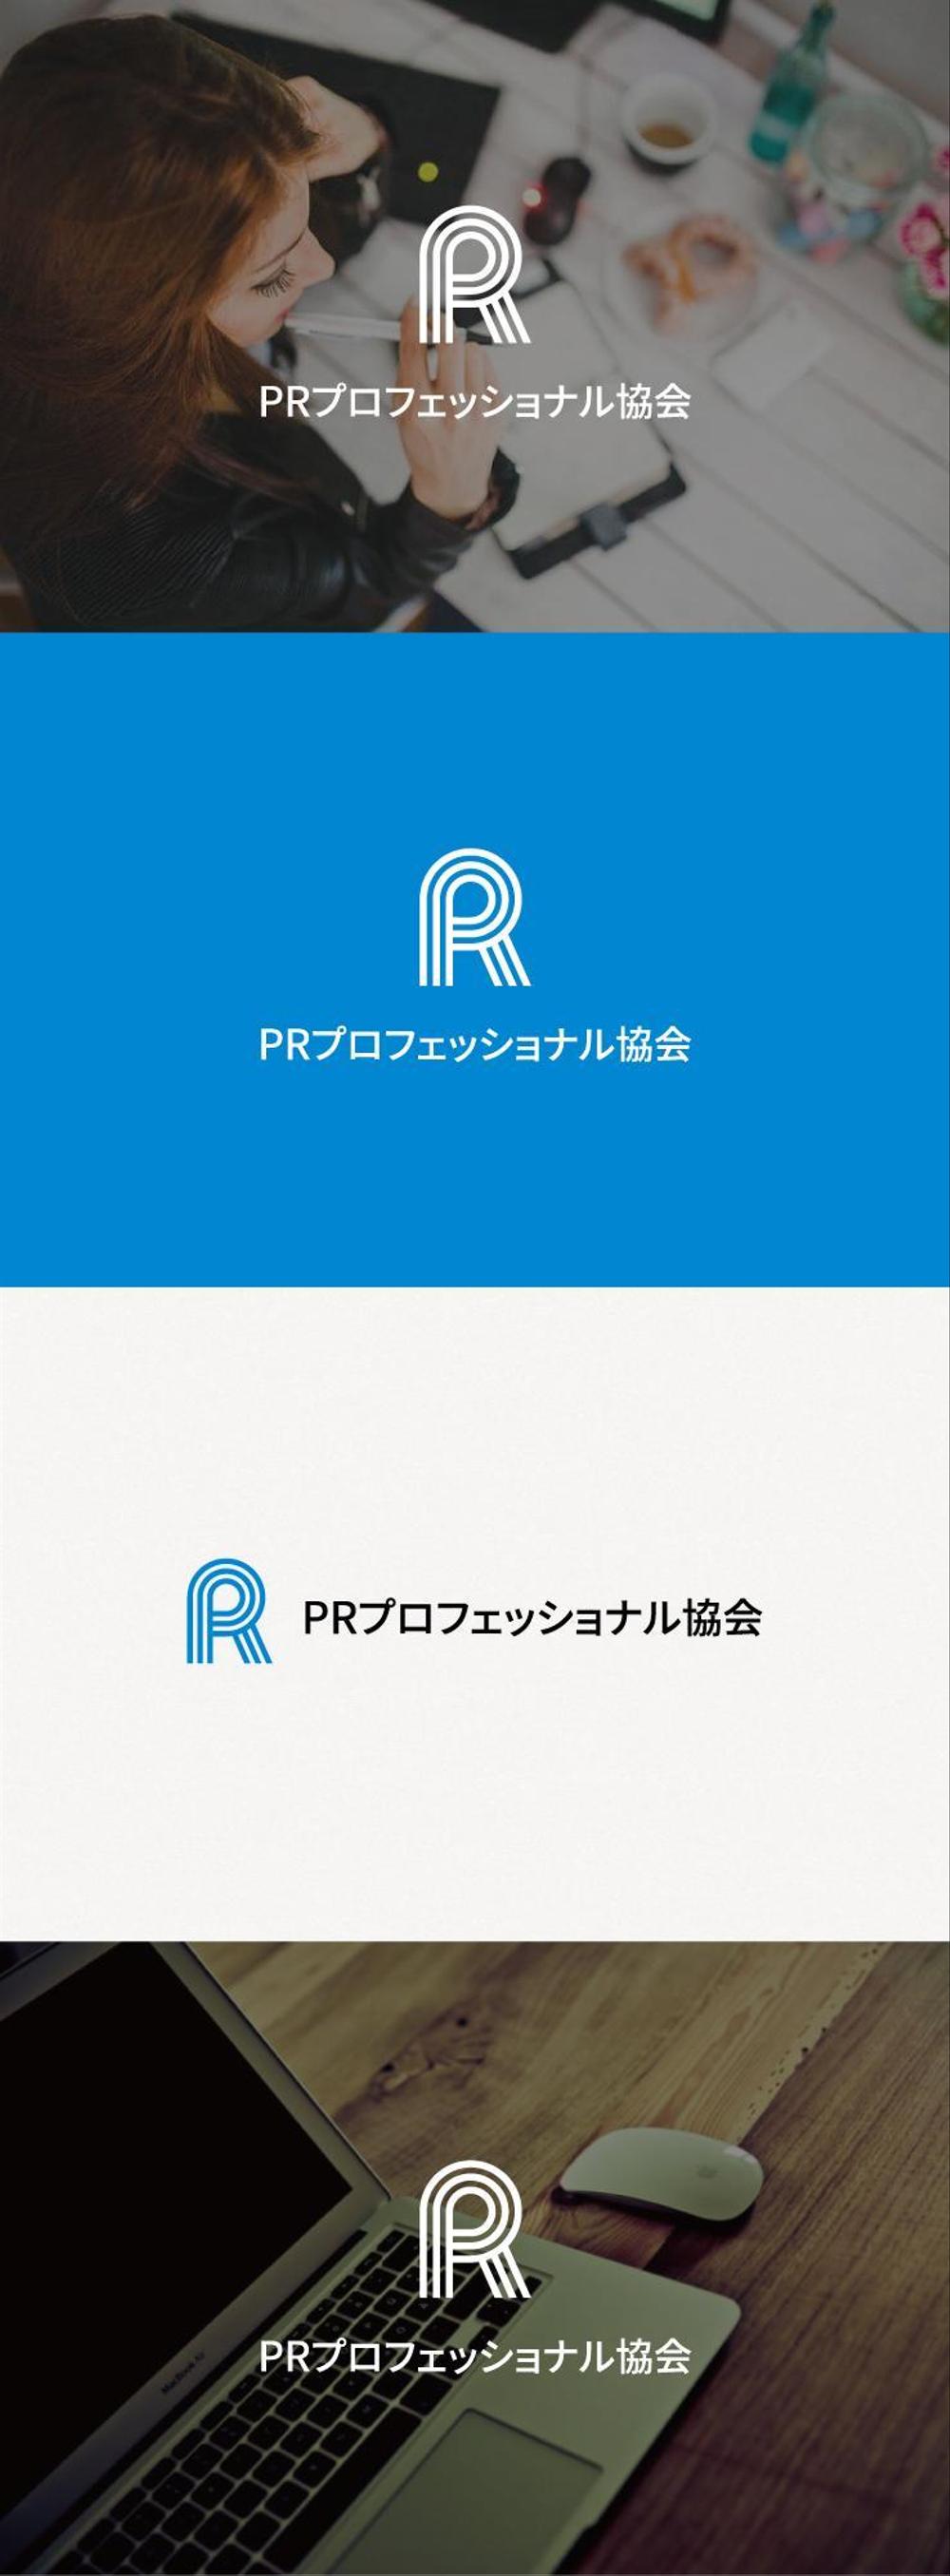 一般社団法人「PRプロフェッショナル協会」のロゴ